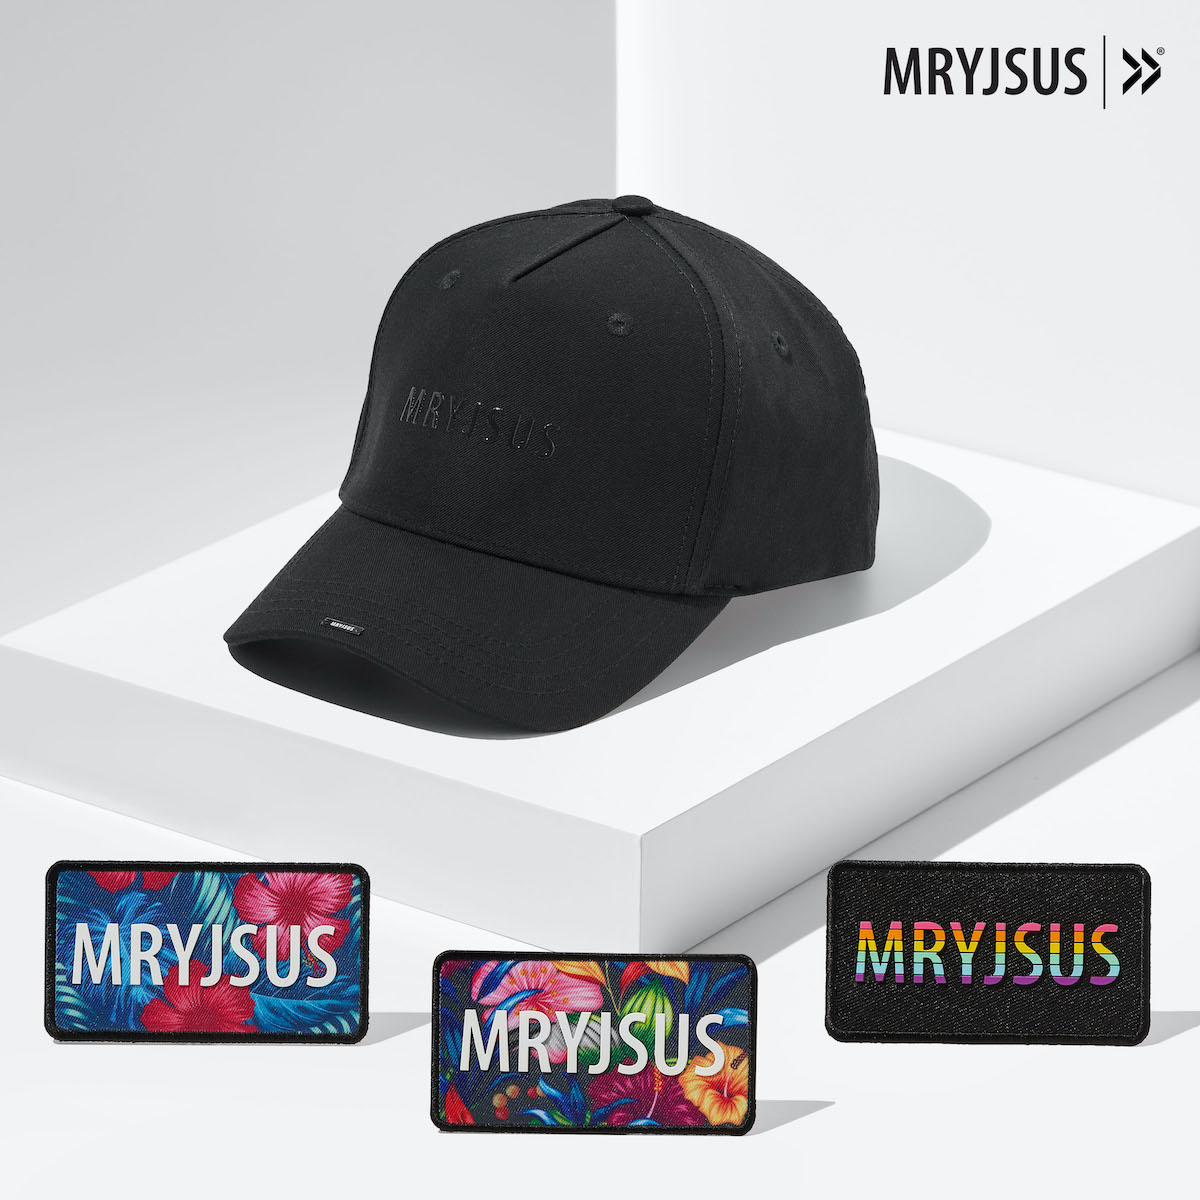 MRYJSUS trucker kit H001 Next Generation Headwear